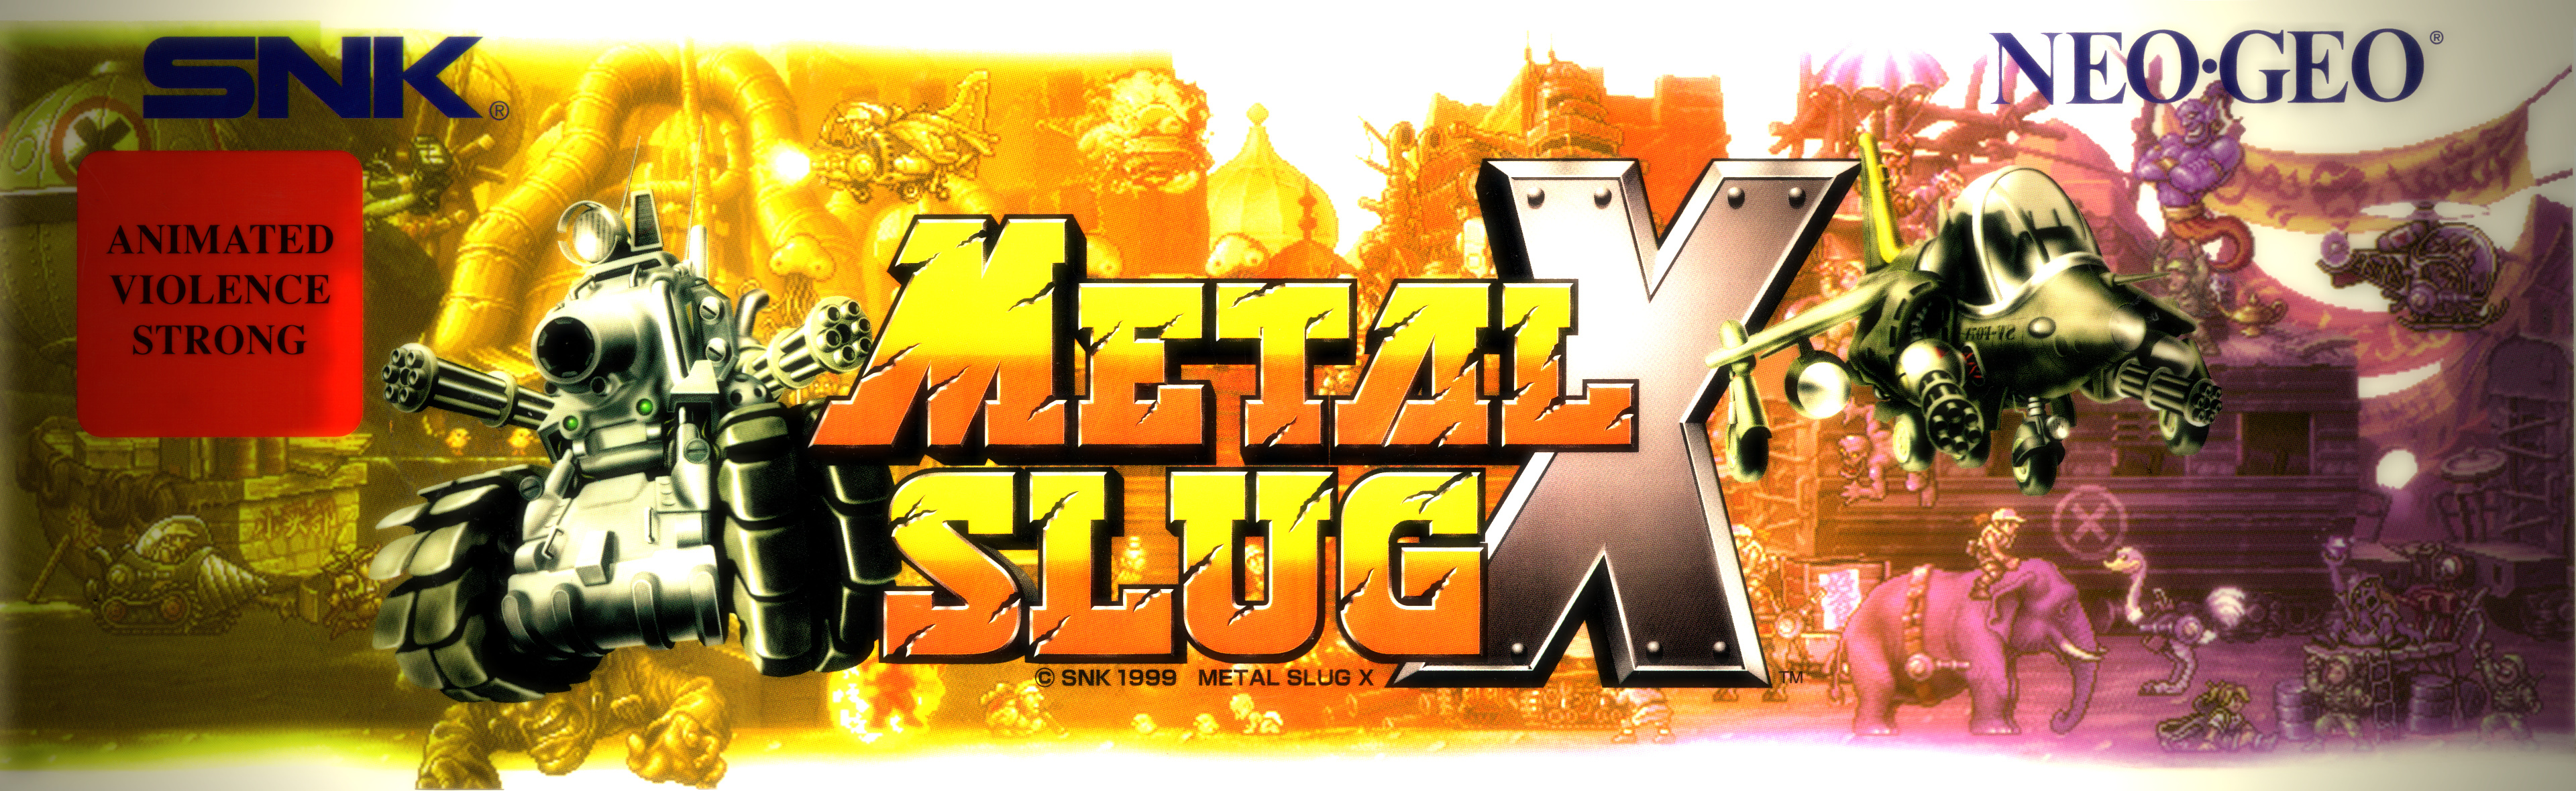 metal slug x